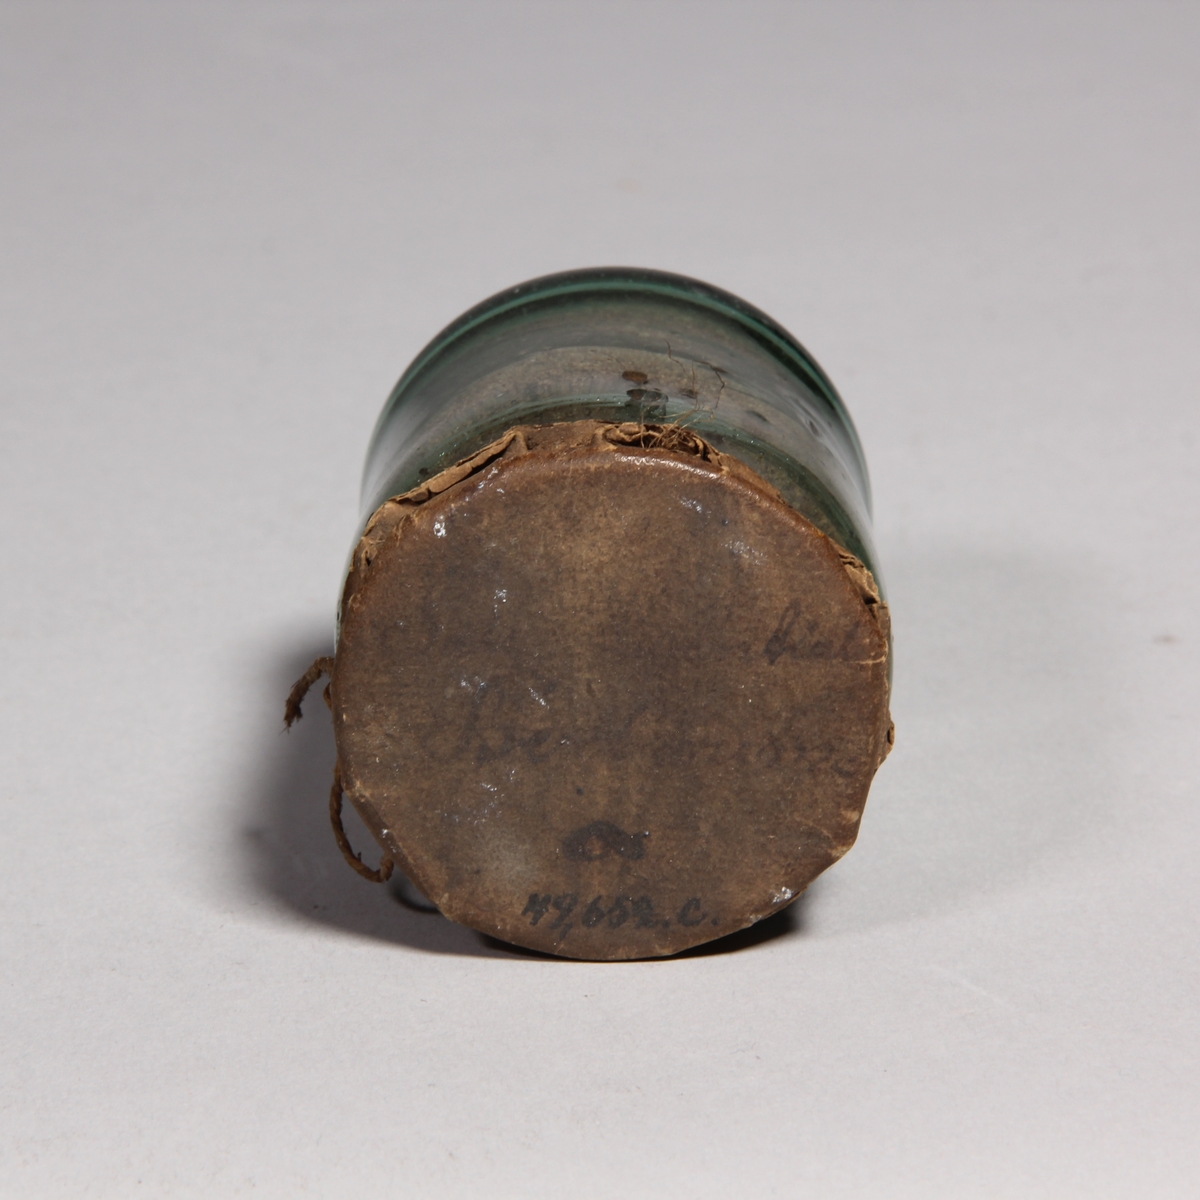 Apoteksburk av grönt glas, cylindrisk med överbundet lock av papper med snöre. Innehåller brunt pulver.